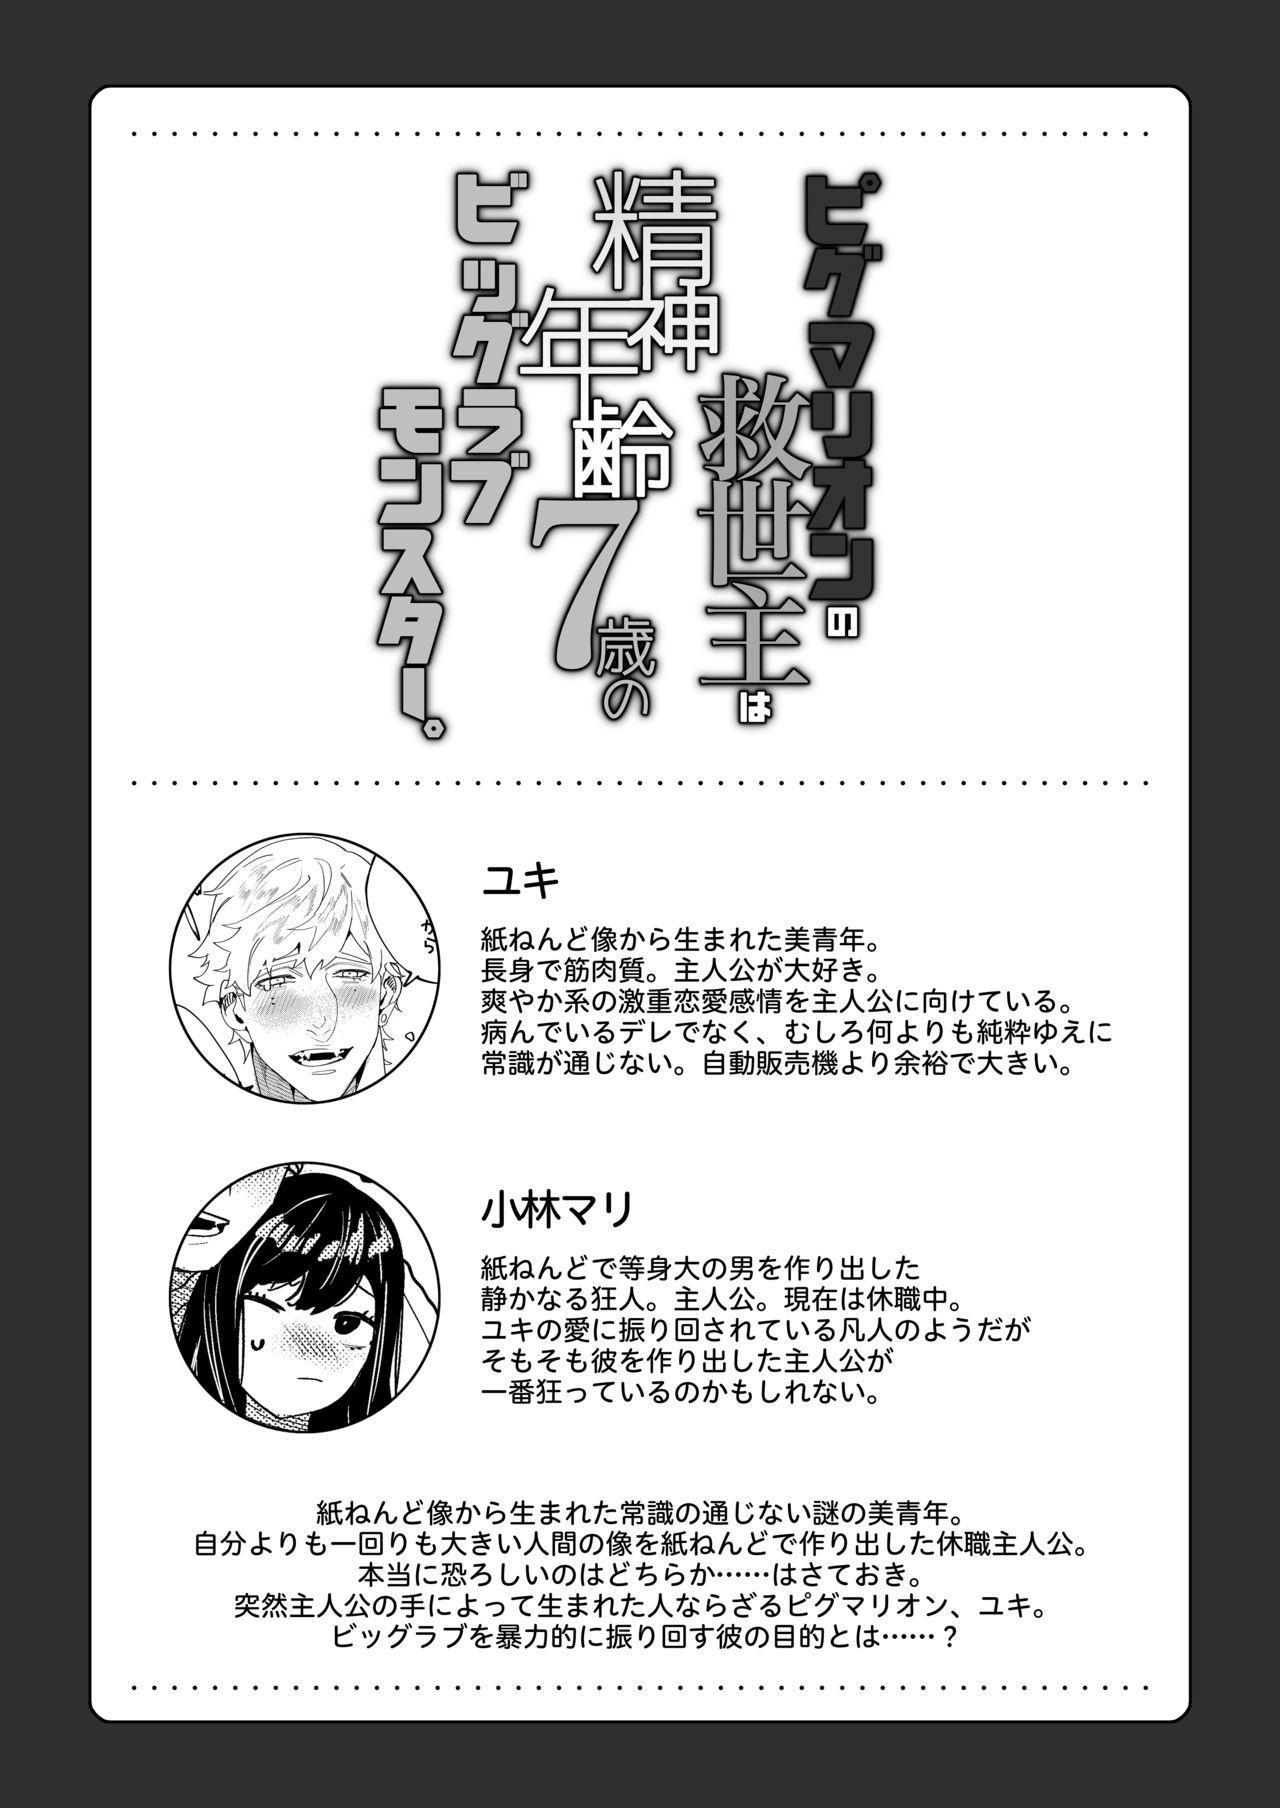 Male Pygmalion no Kyuuseishu wa Seishin Nenrei 7-sai no Big Love Monster. - Original Special Locations - Page 3